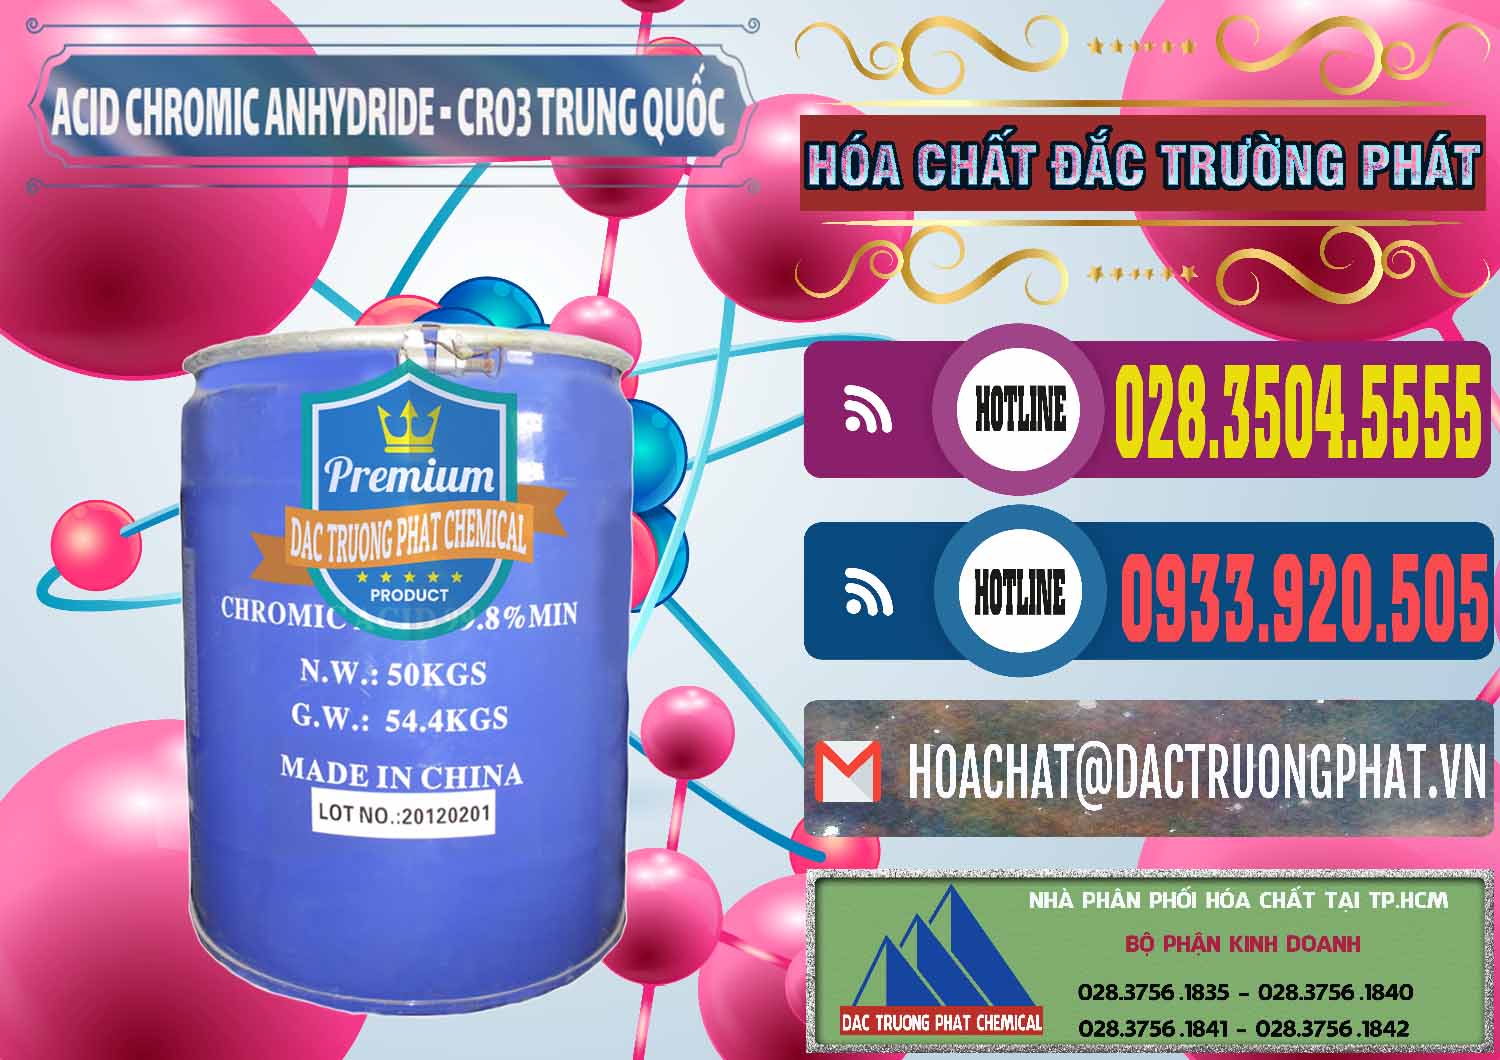 Cty cung cấp _ bán Acid Chromic Anhydride - Cromic CRO3 Trung Quốc China - 0007 - Nơi phân phối - cung ứng hóa chất tại TP.HCM - muabanhoachat.com.vn